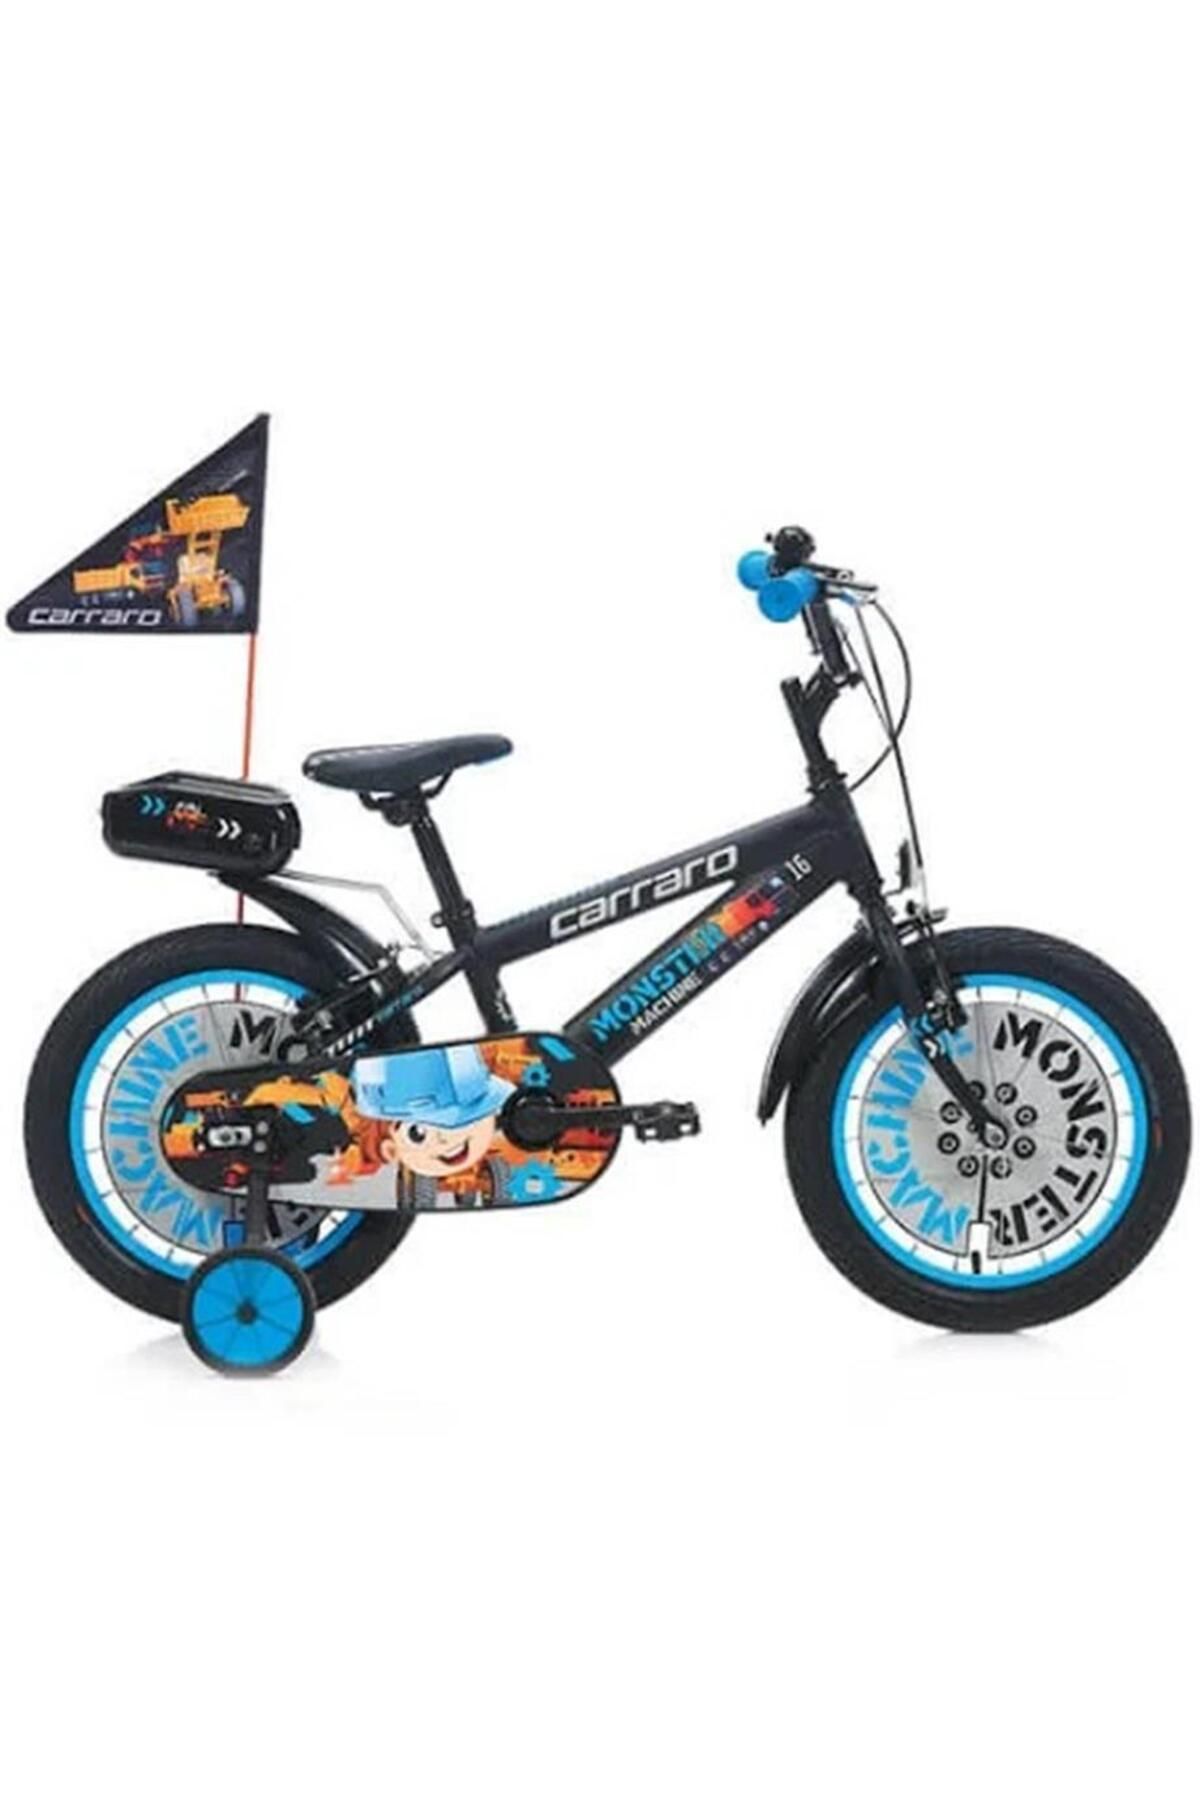 Carraro Monster Erkek Çocuk Bisikleti 210h V 12 Jant Mat Siyah Gri Mavi